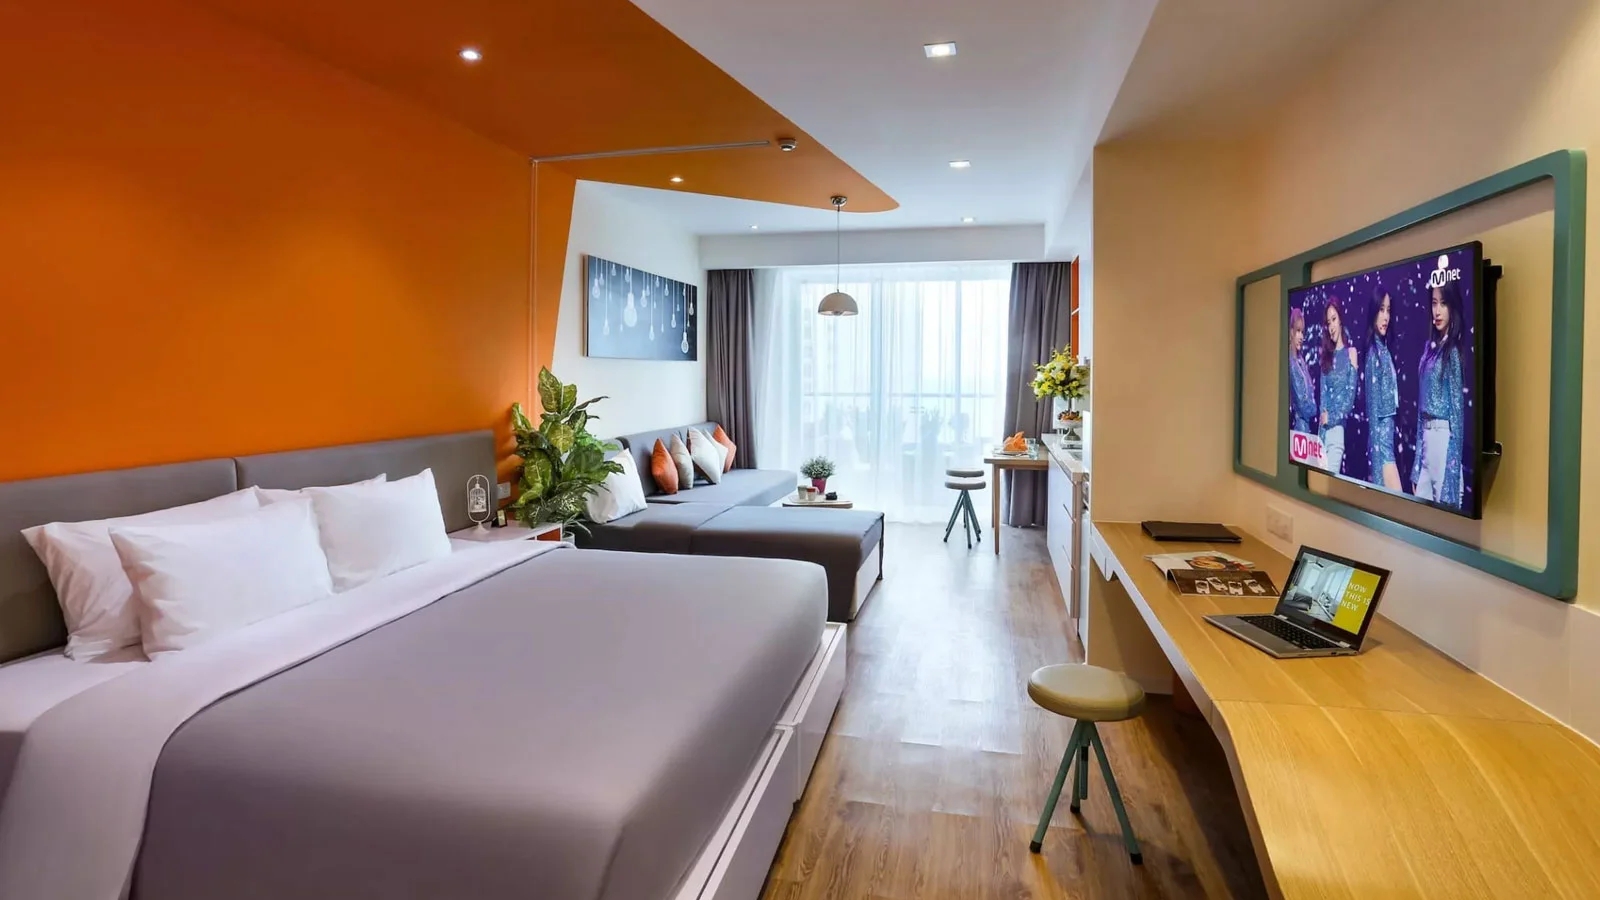 Khách sạn Ariyana SmartCondotel Nha Trang